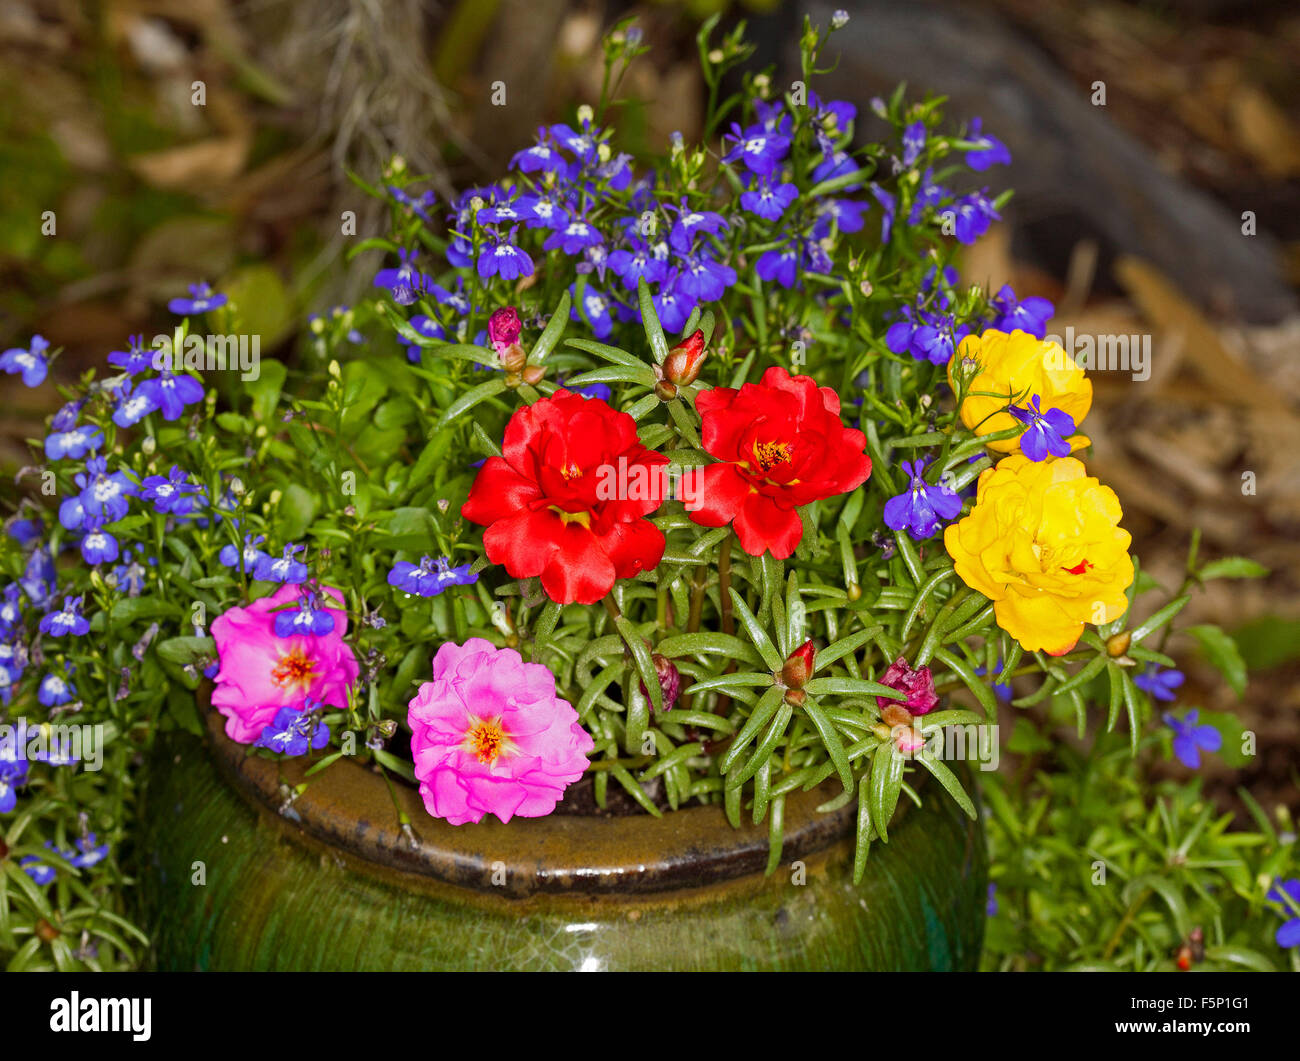 Masa de coloridas flores de primavera anuarios, amarillo, rojo, rosa y azul portulacas lobelia en recipiente de cerámica verde oscuro / POT Foto de stock